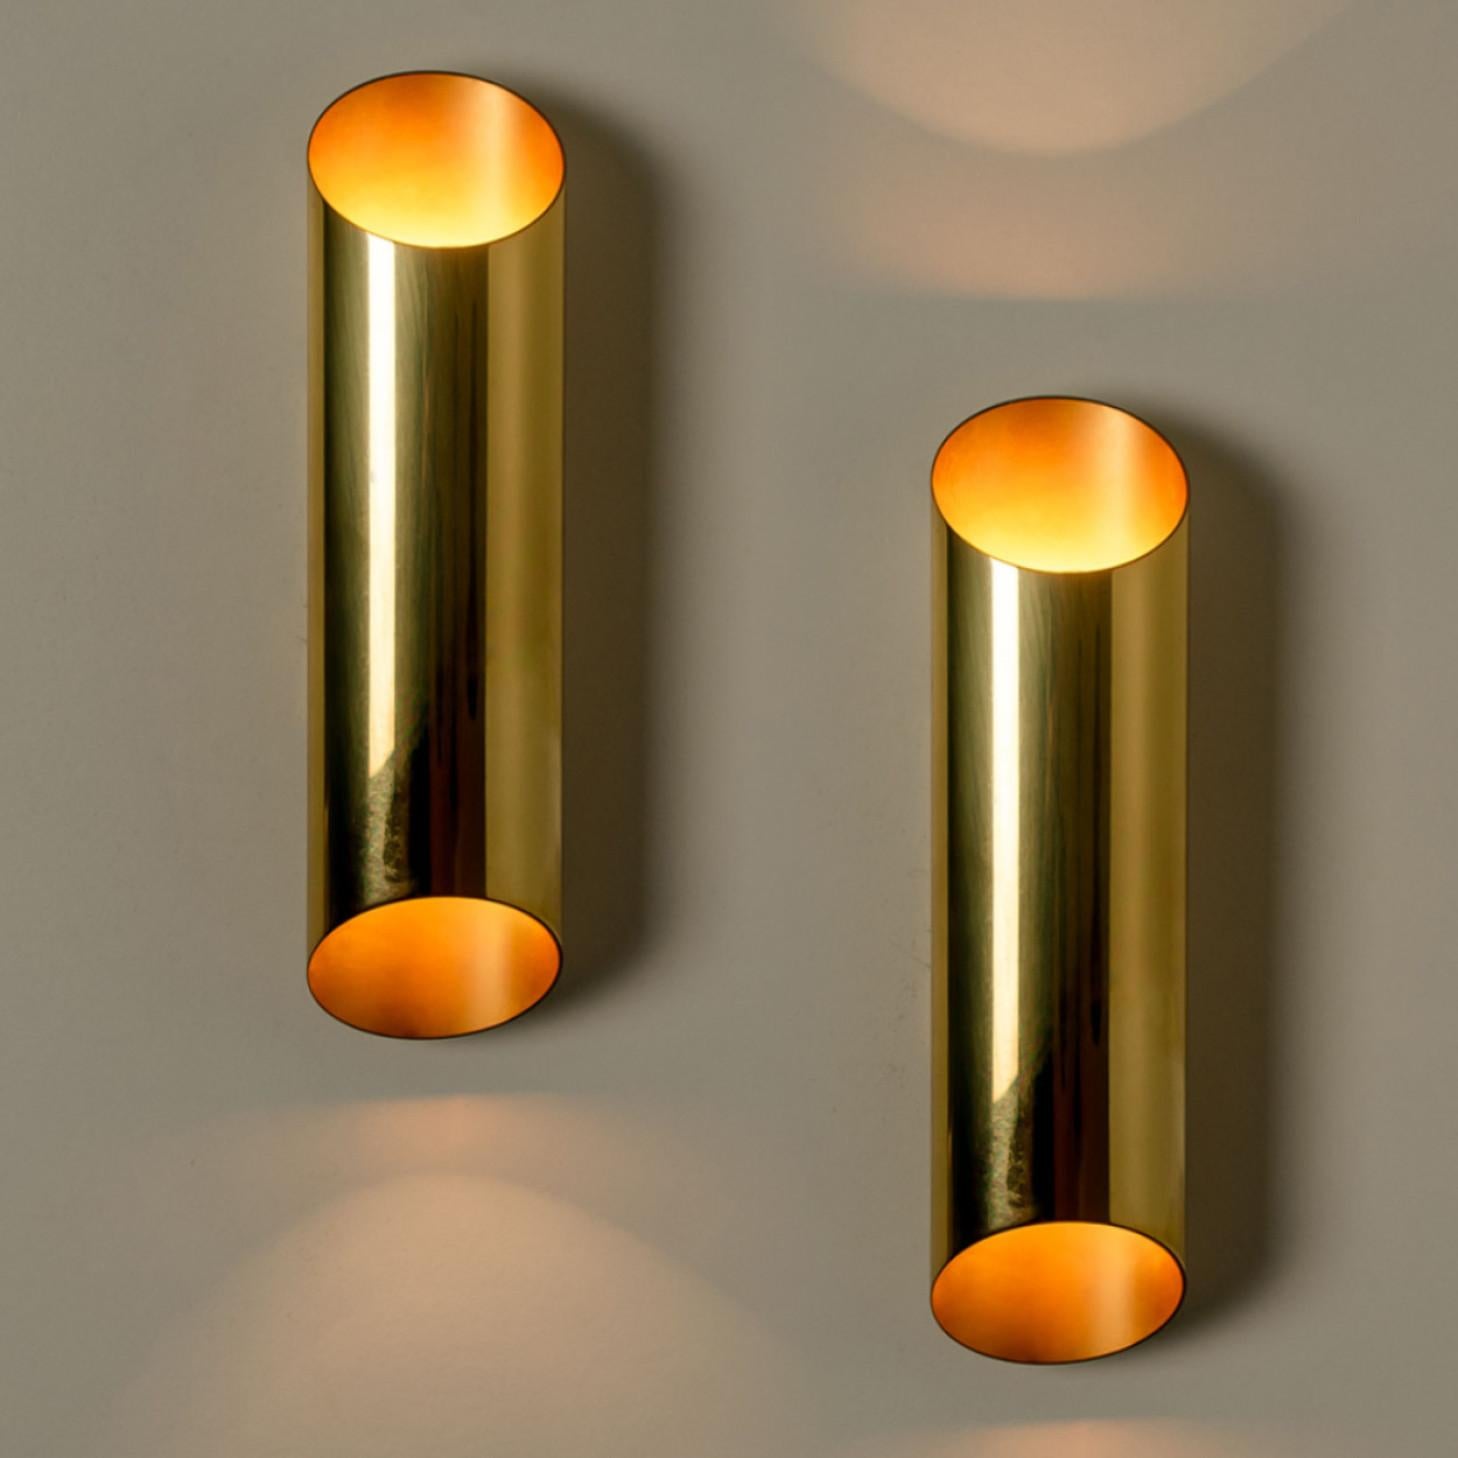 Geometrical Tube Brass Sconces in Style of Nanda Vigo, Italy, 1960s For Sale 1